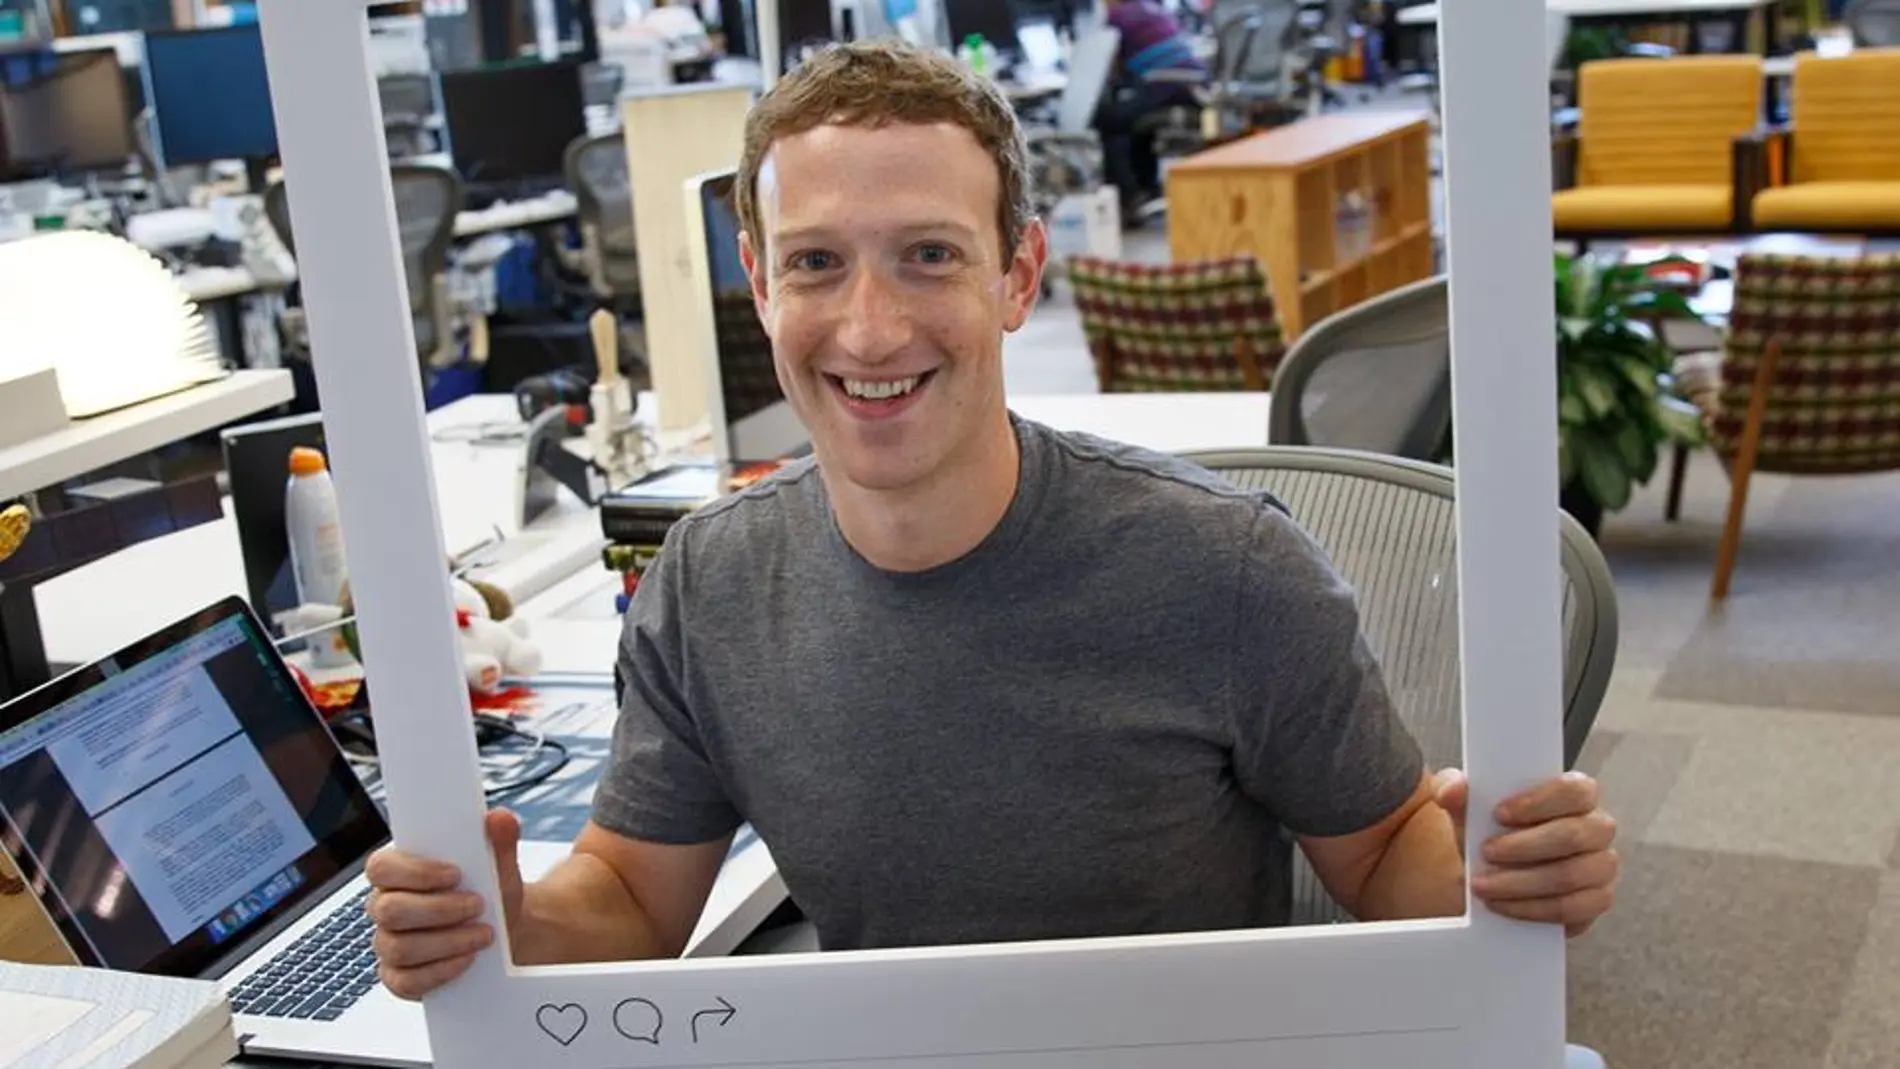 Imagen con la que Zuckerberg conmemoró los 500 millones de usuarios activos en Instagram